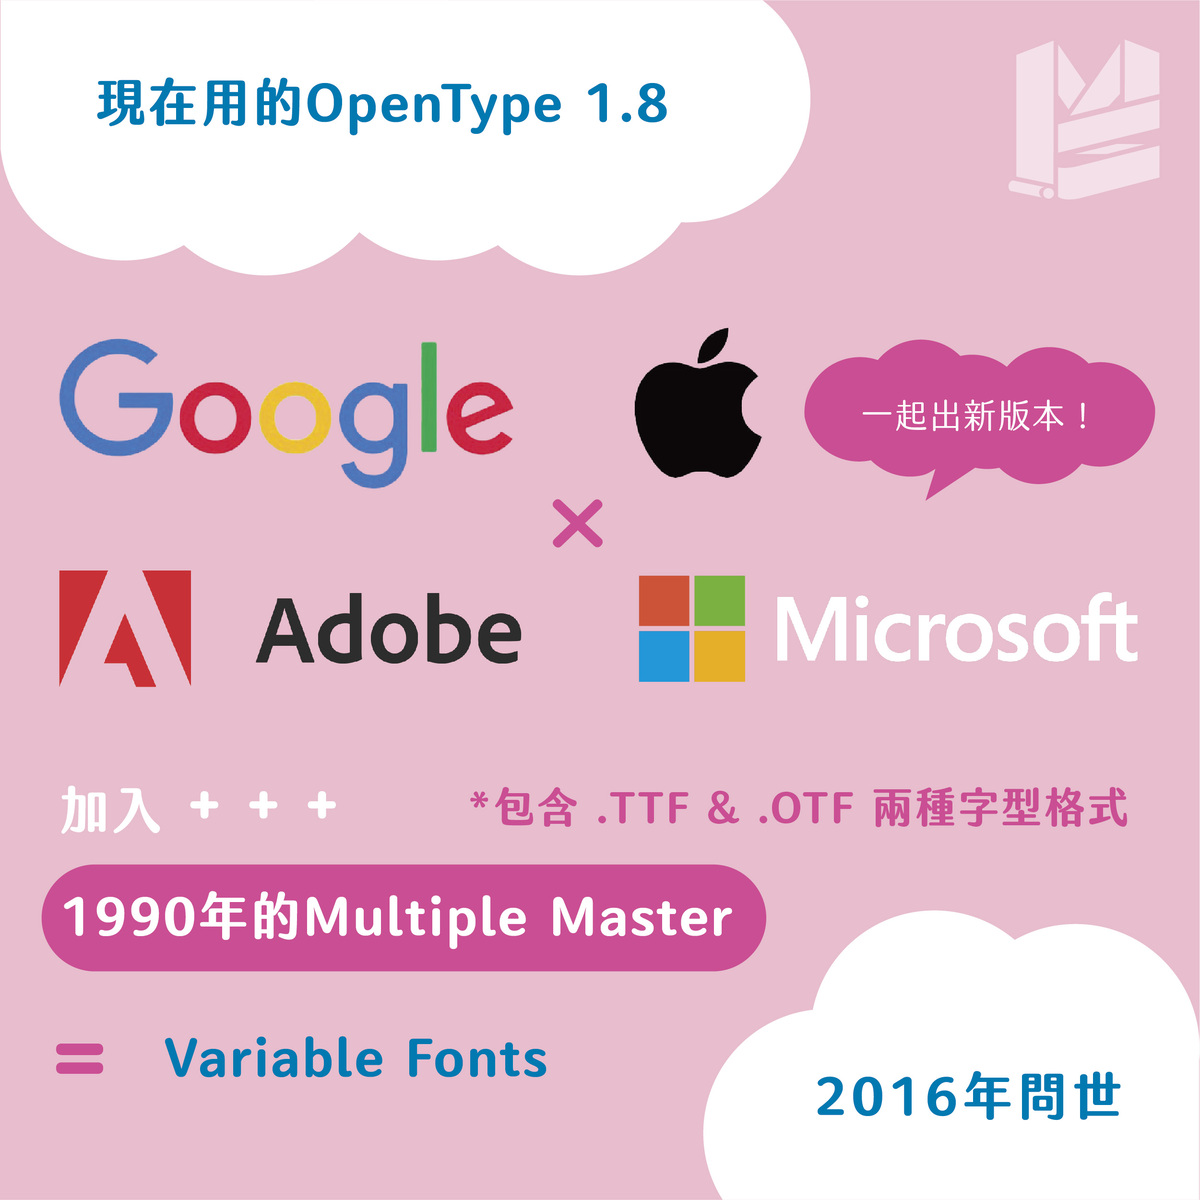 【三個常見字型】TTF. / OTF. / TTC. 副檔名的差異－現在用的OpenType 1.8